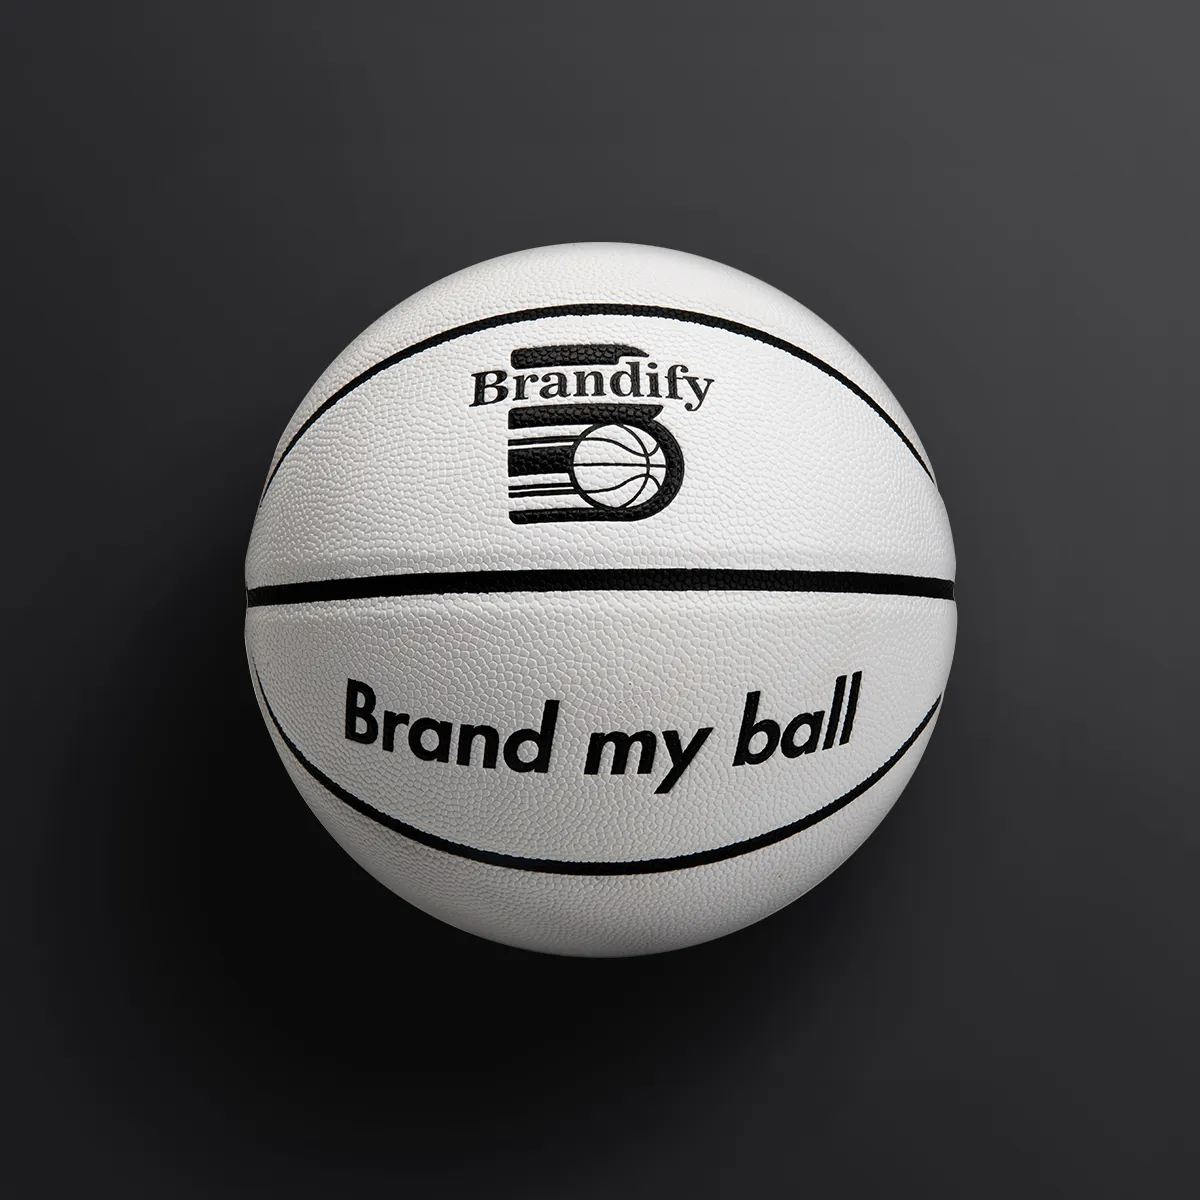 कस्टम सफेद चमड़े बास्केटबॉल काले में चैनल के साथ सस्ते कीमत के लिए आउटडोर